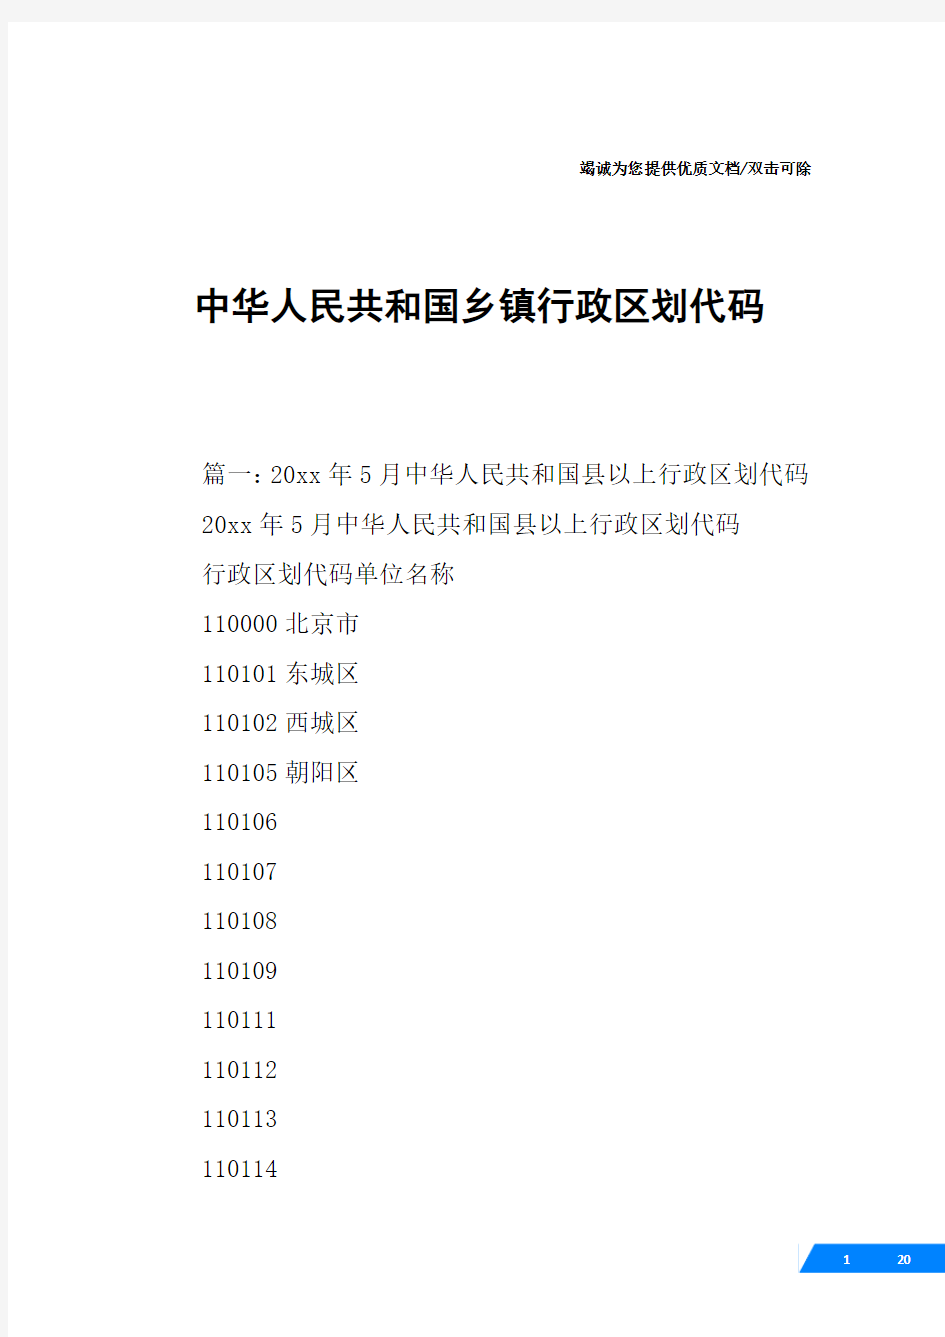 中华人民共和国乡镇行政区划代码